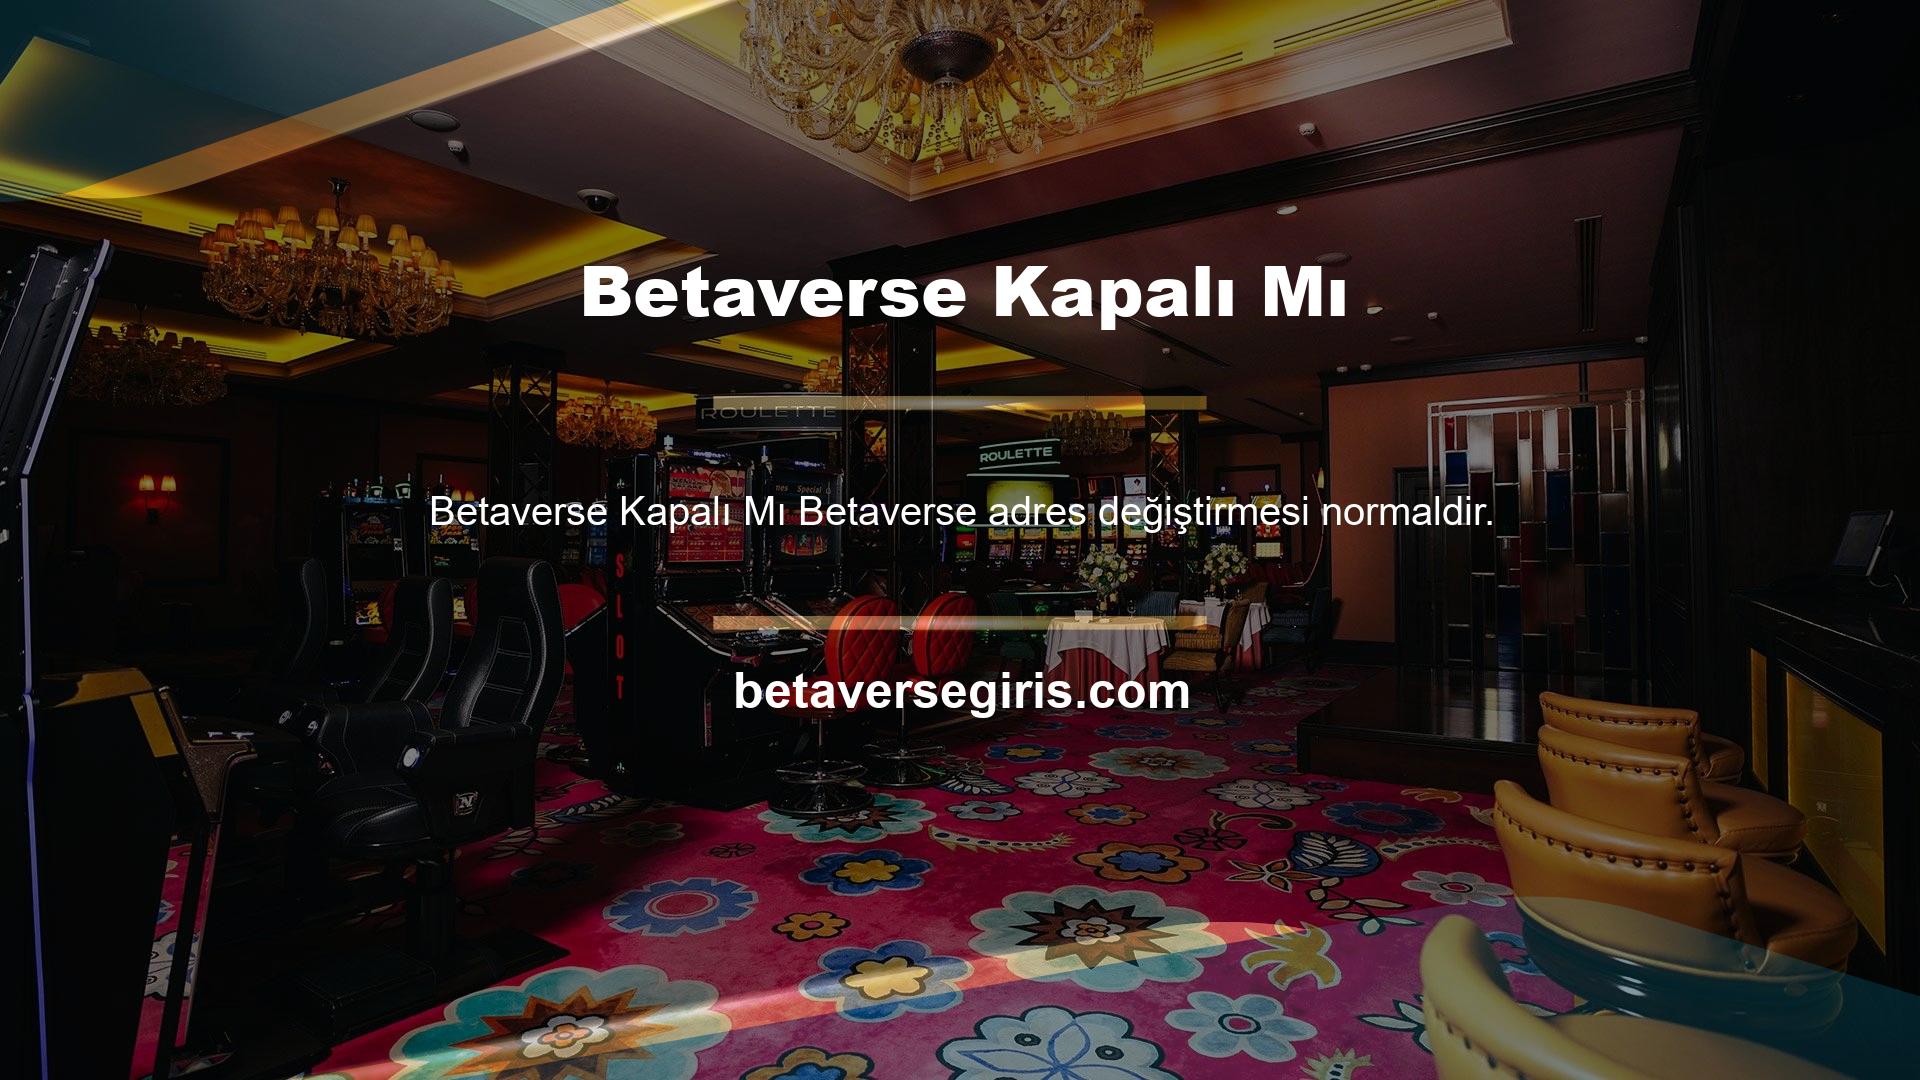 Türkiye'de yayın yapan tüm online bahis siteleri ve canlı casinolar gibi Betaverse BTK'nın kararı nedeniyle kapatılabilir